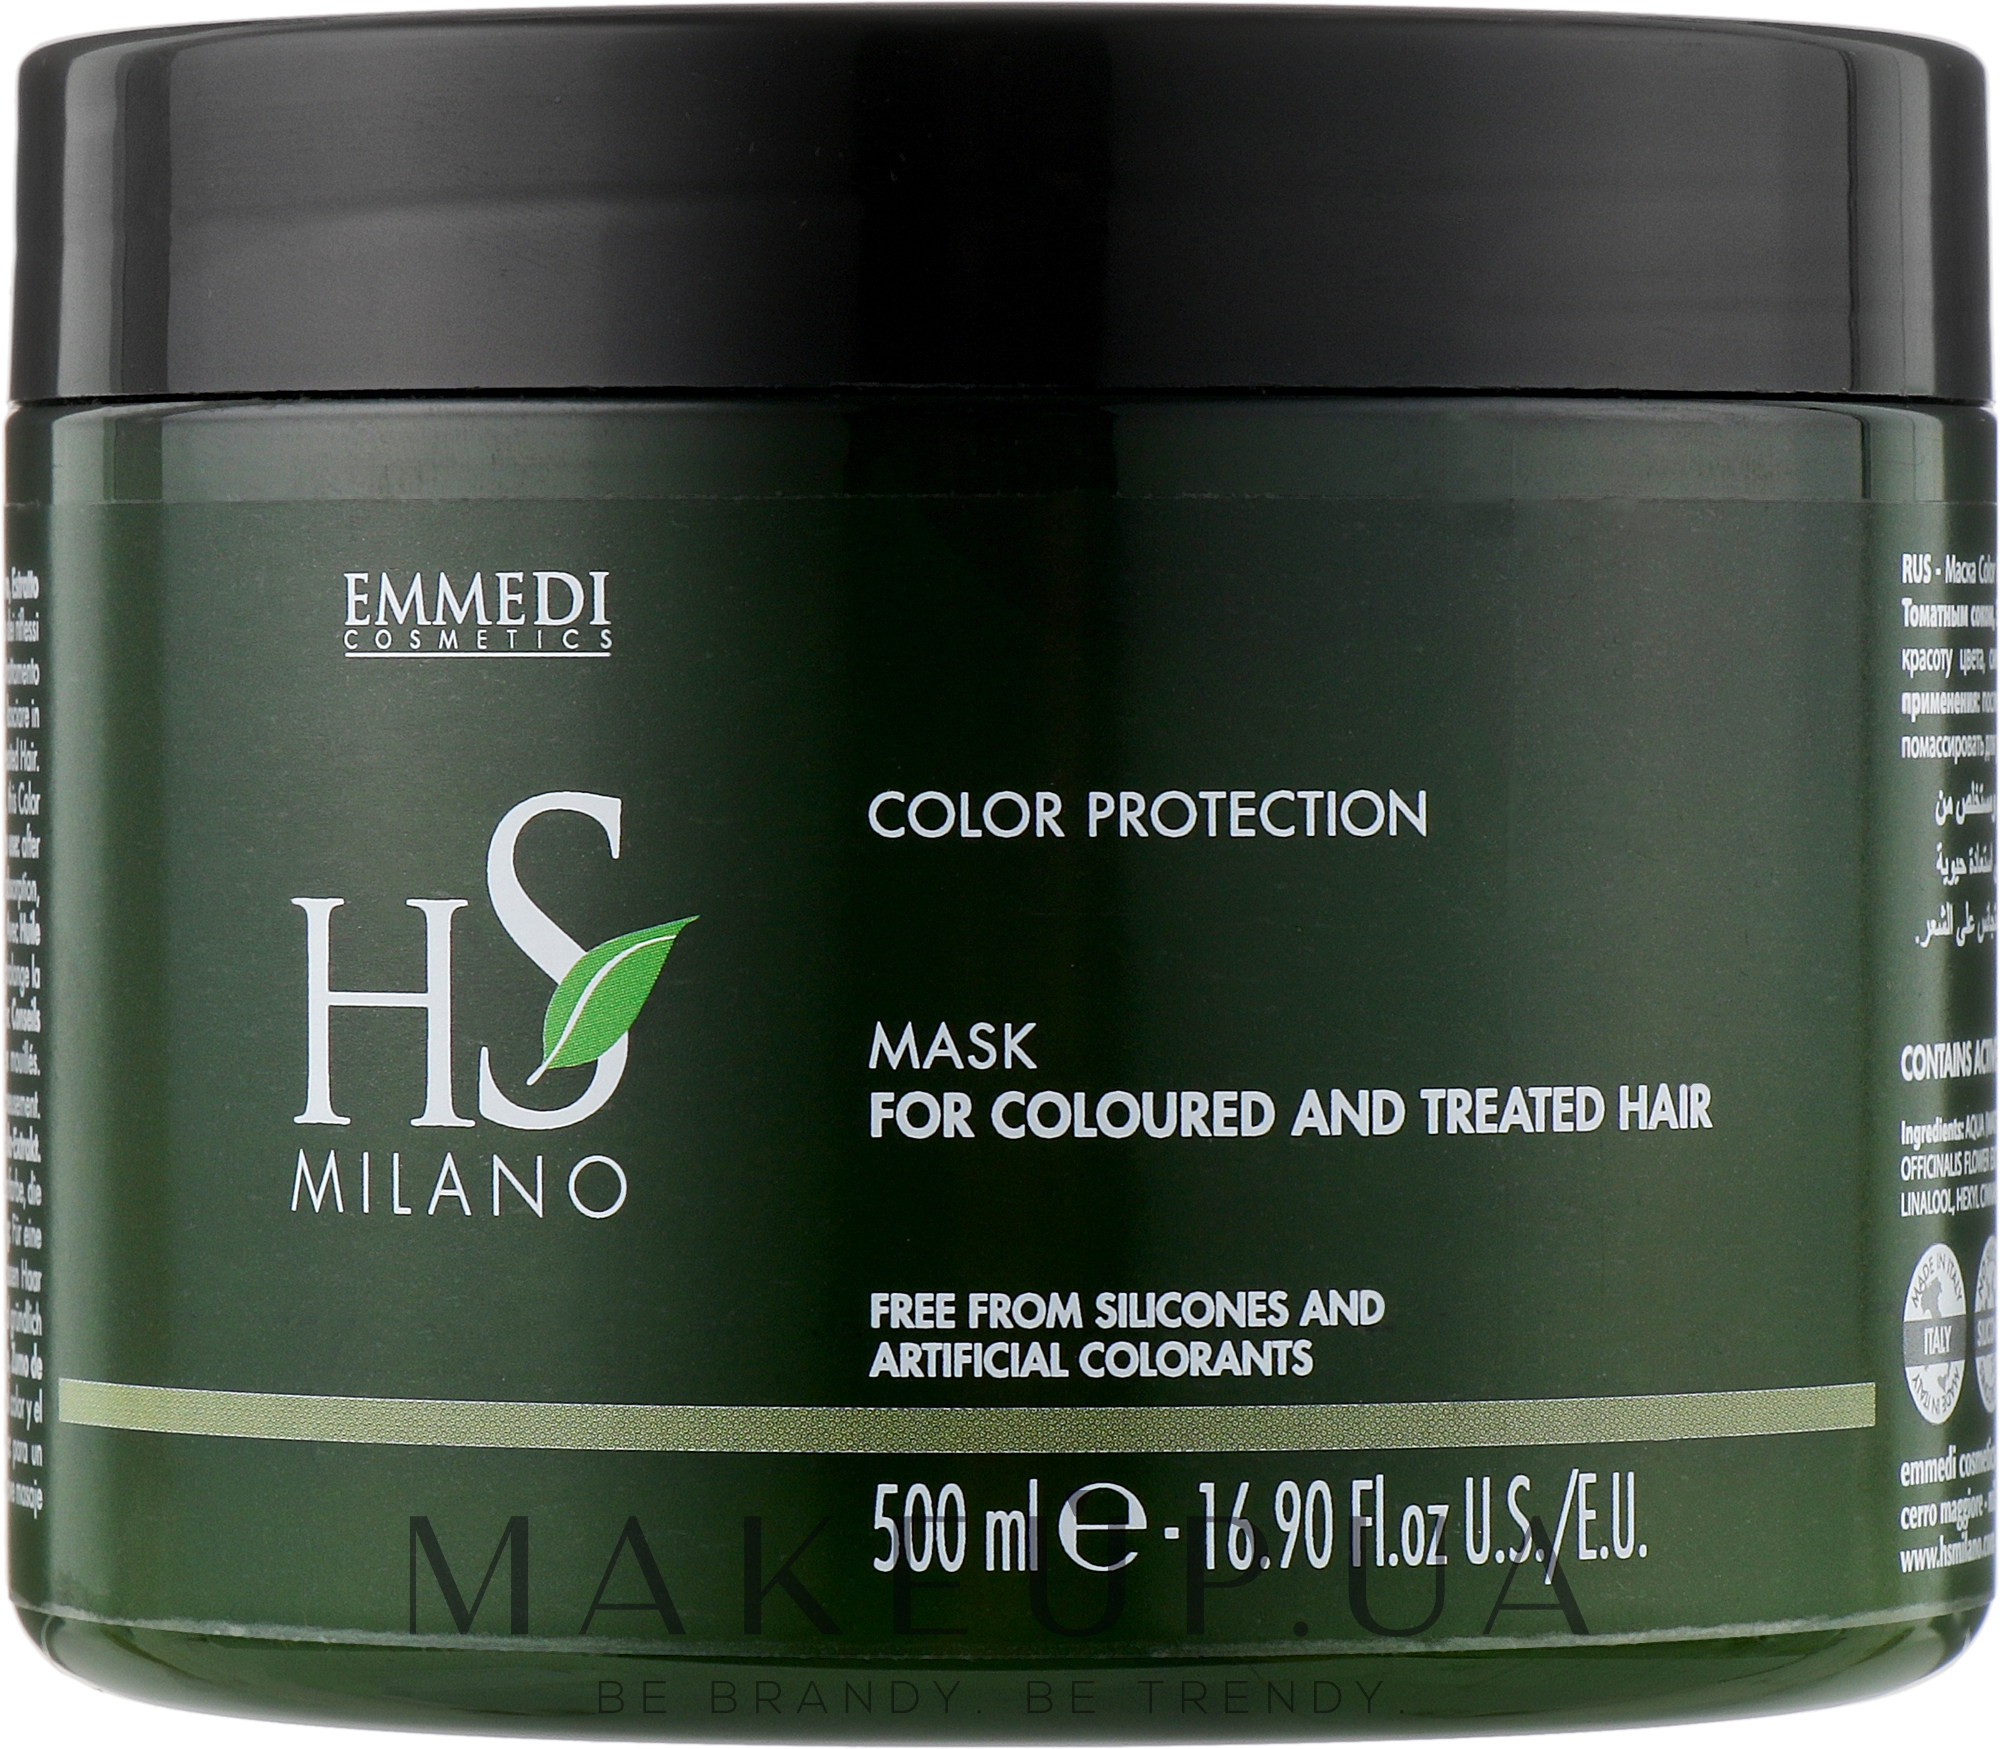 HS Milano Color Protection Mask For Coloured And Treated Hair - Маска для  окрашенных волос и после химического воздействия: купить по лучшей цене в  Украине | Makeup.ua